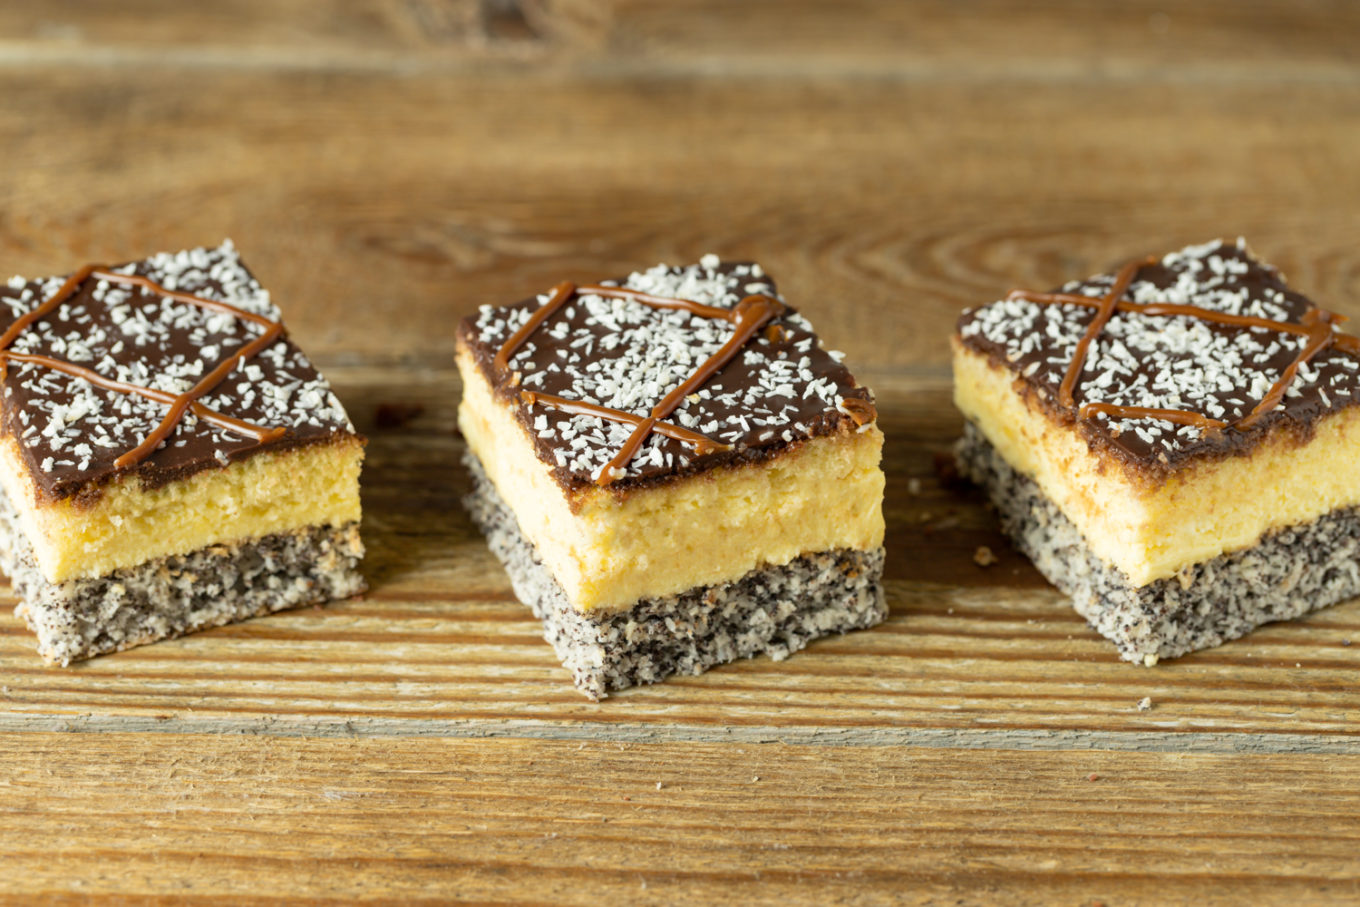 makowiec-rólewski-pijak Konfekt Jacek Placek er synonymt med smaken av hjemmelagde kaker laget av naturlige produkter.